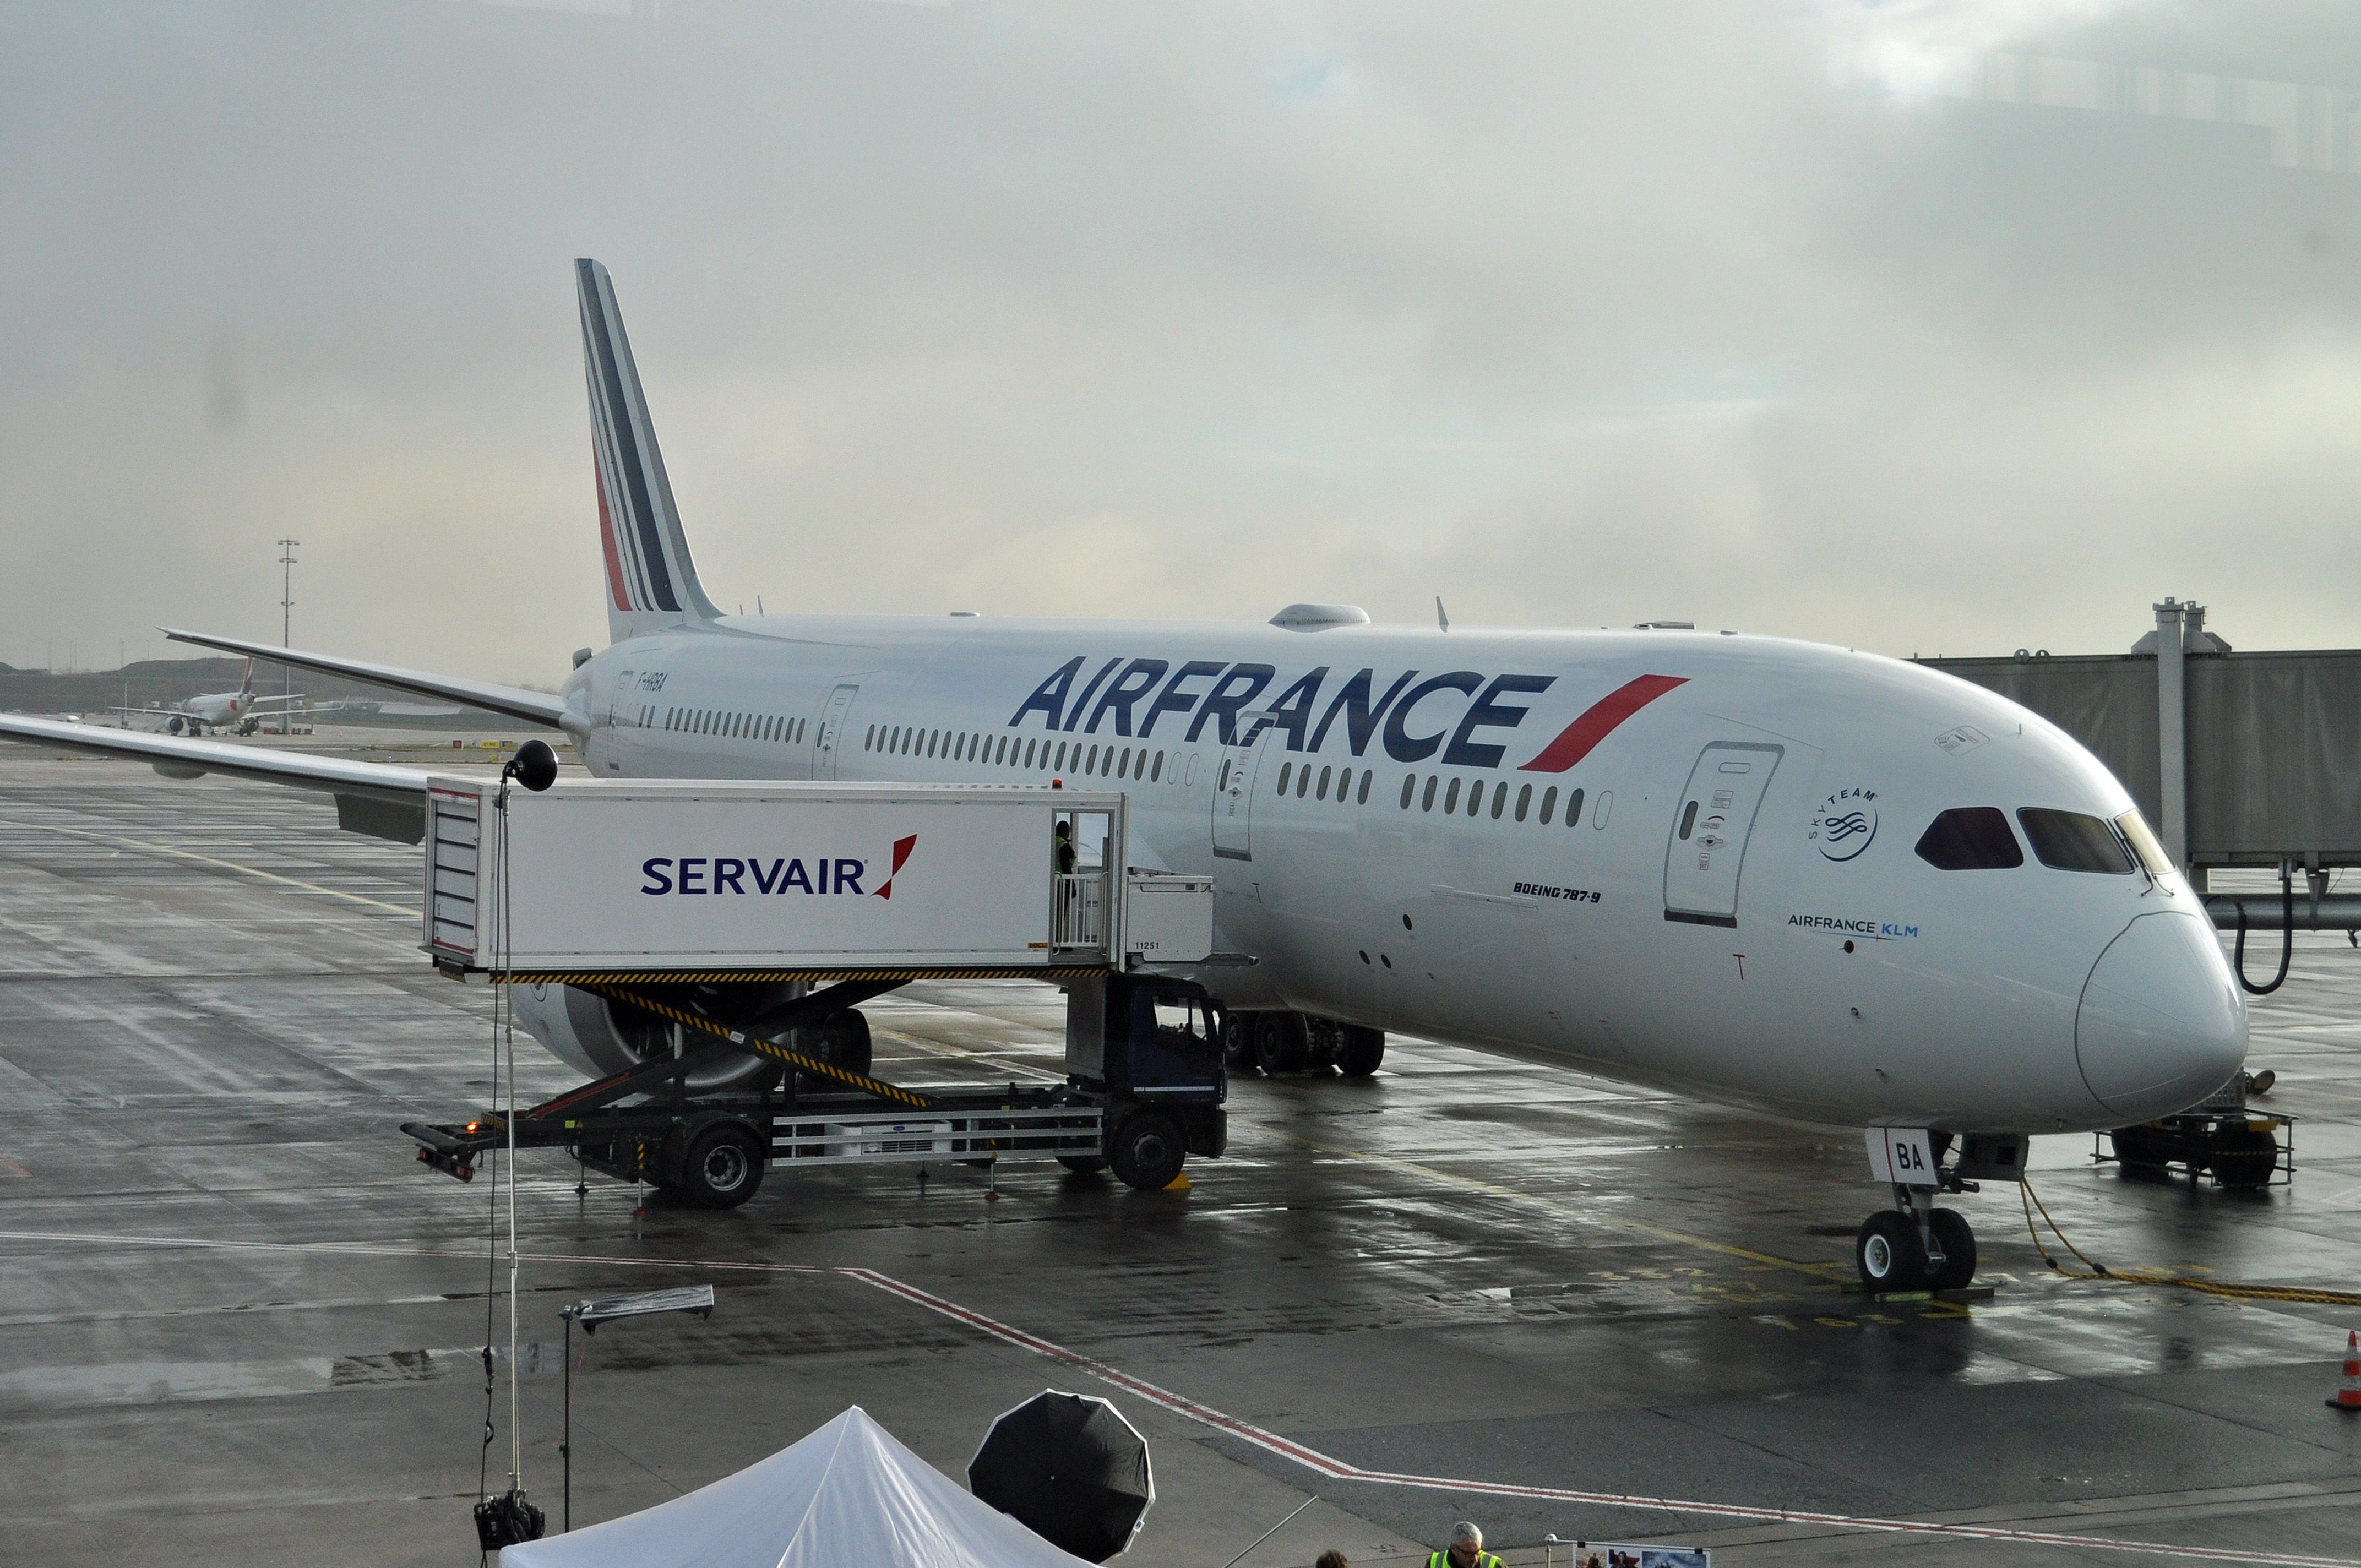 A Sevair catering truck fills an Air France aircraft at CDG.